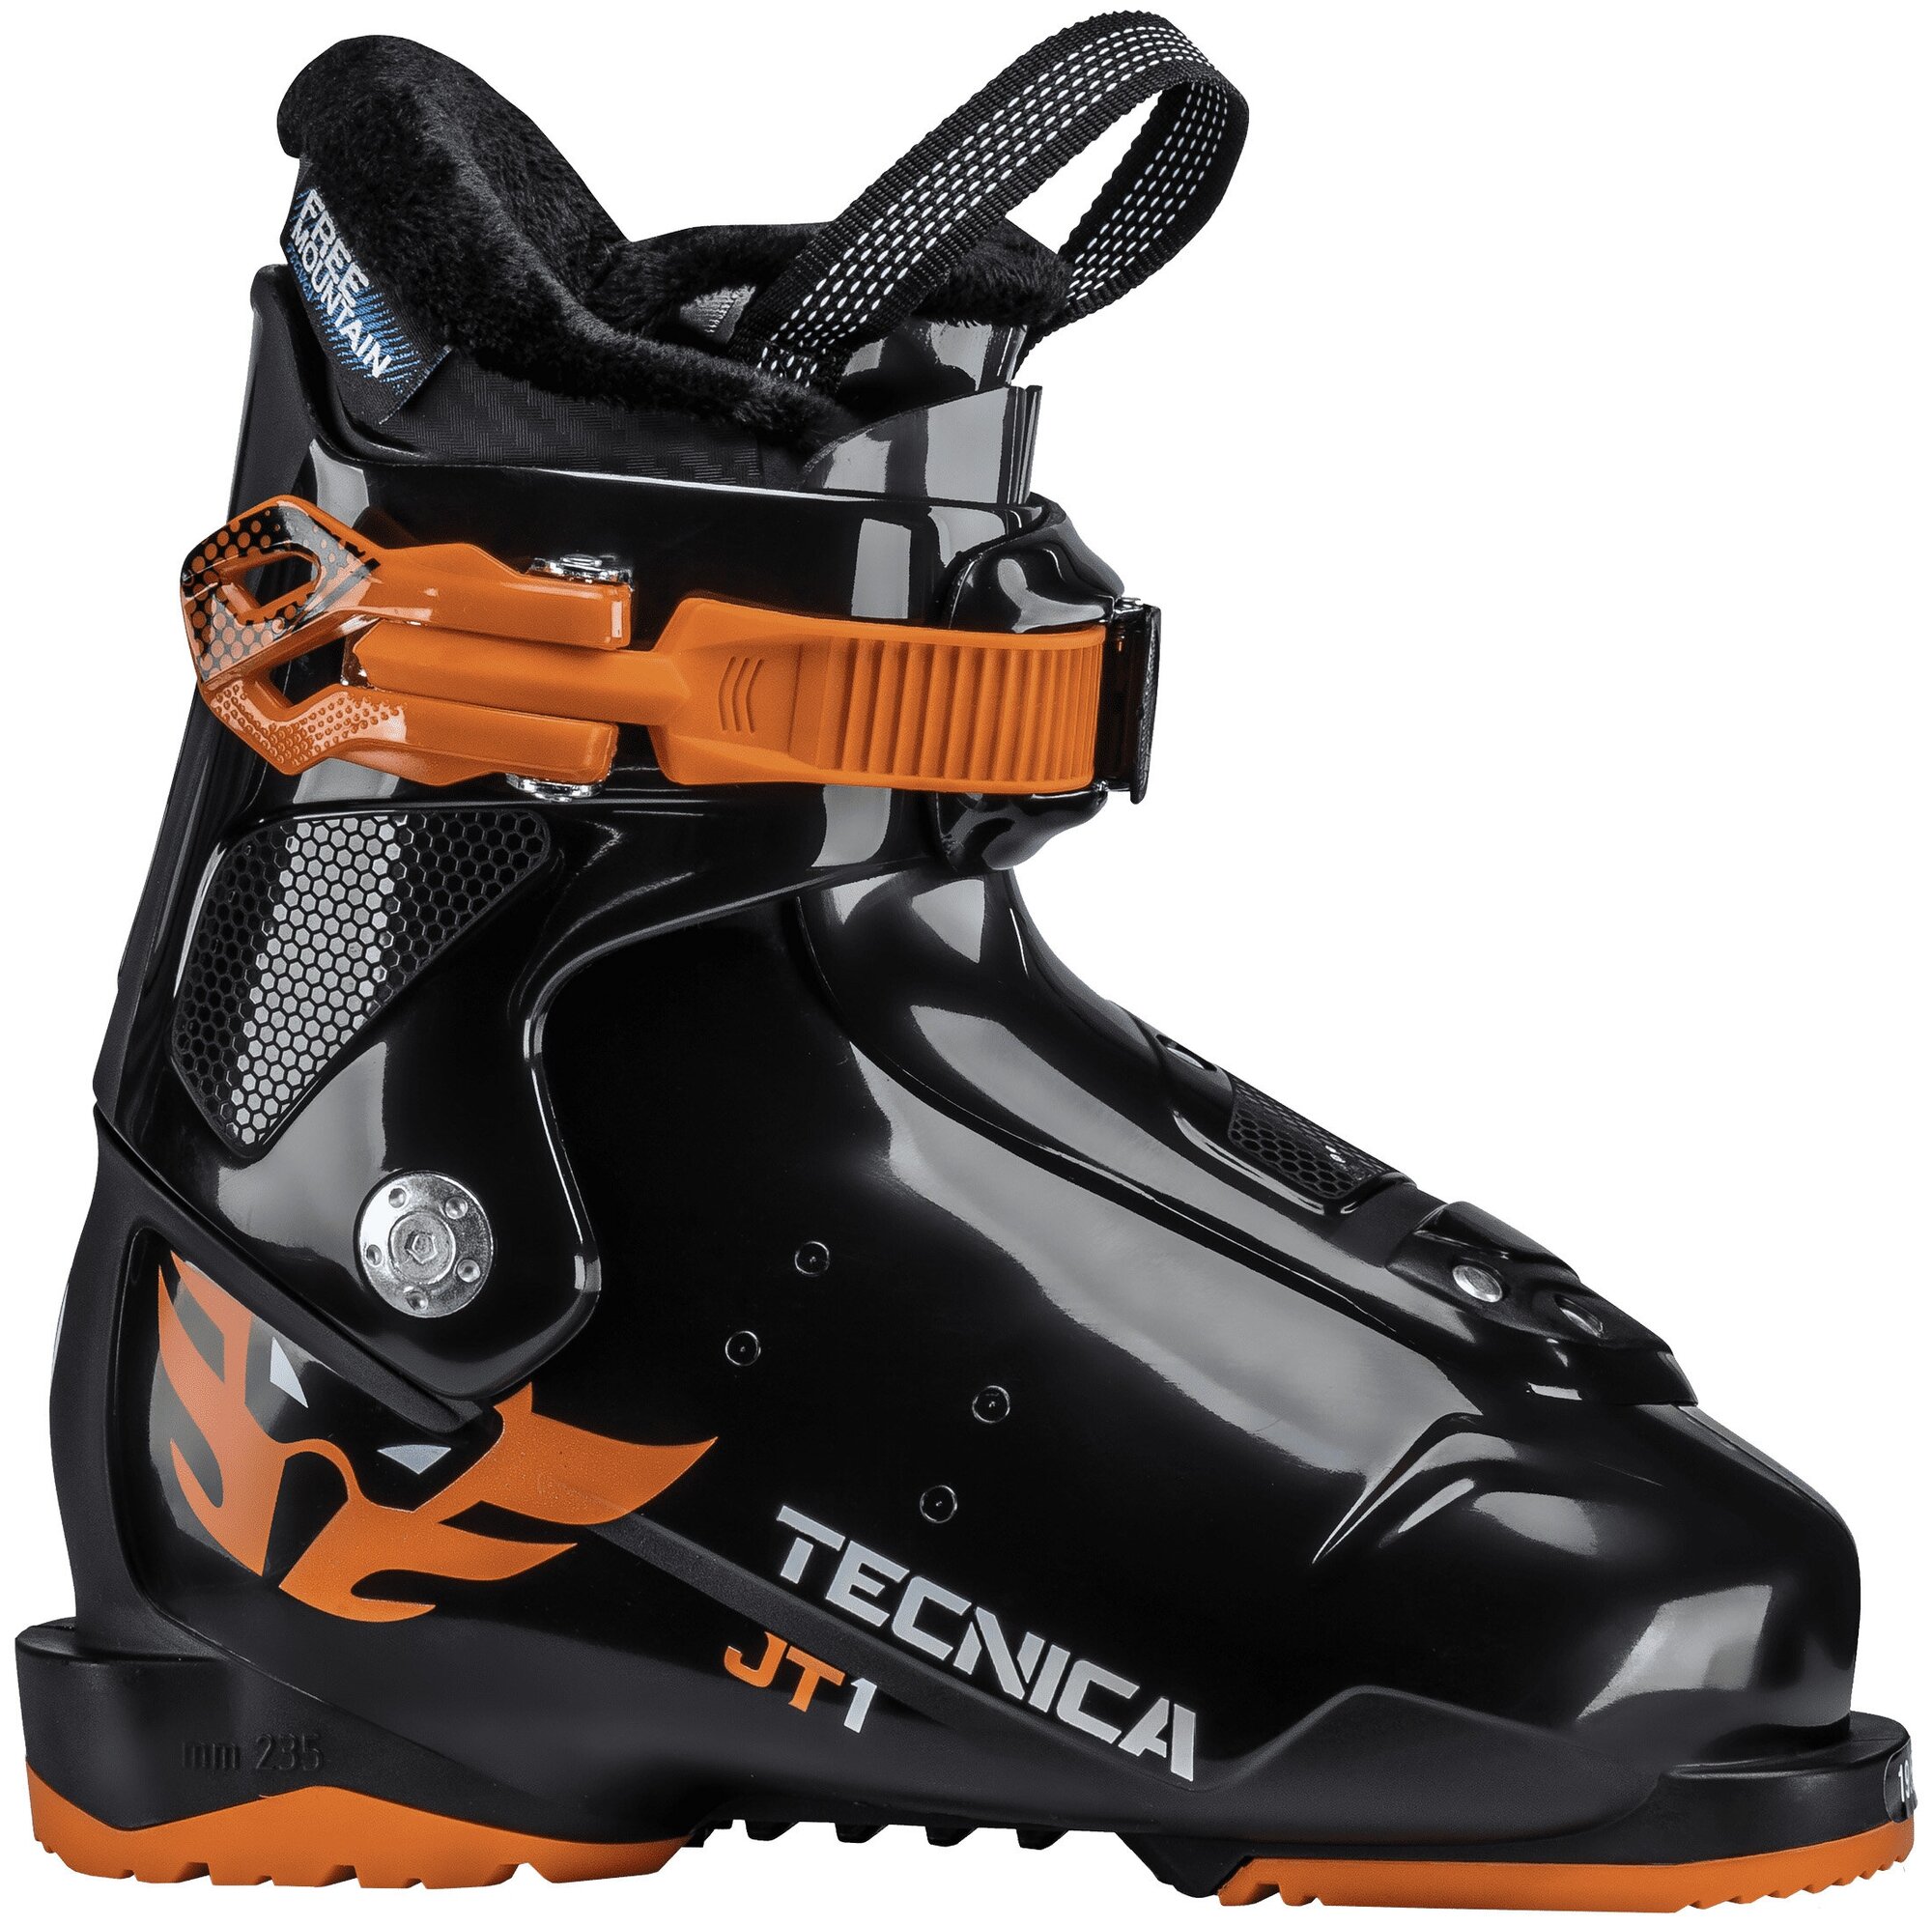 Детские горнолыжные ботинки Tecnica JT 1 — купить в интернет-магазине понизкой цене на Яндекс Маркете